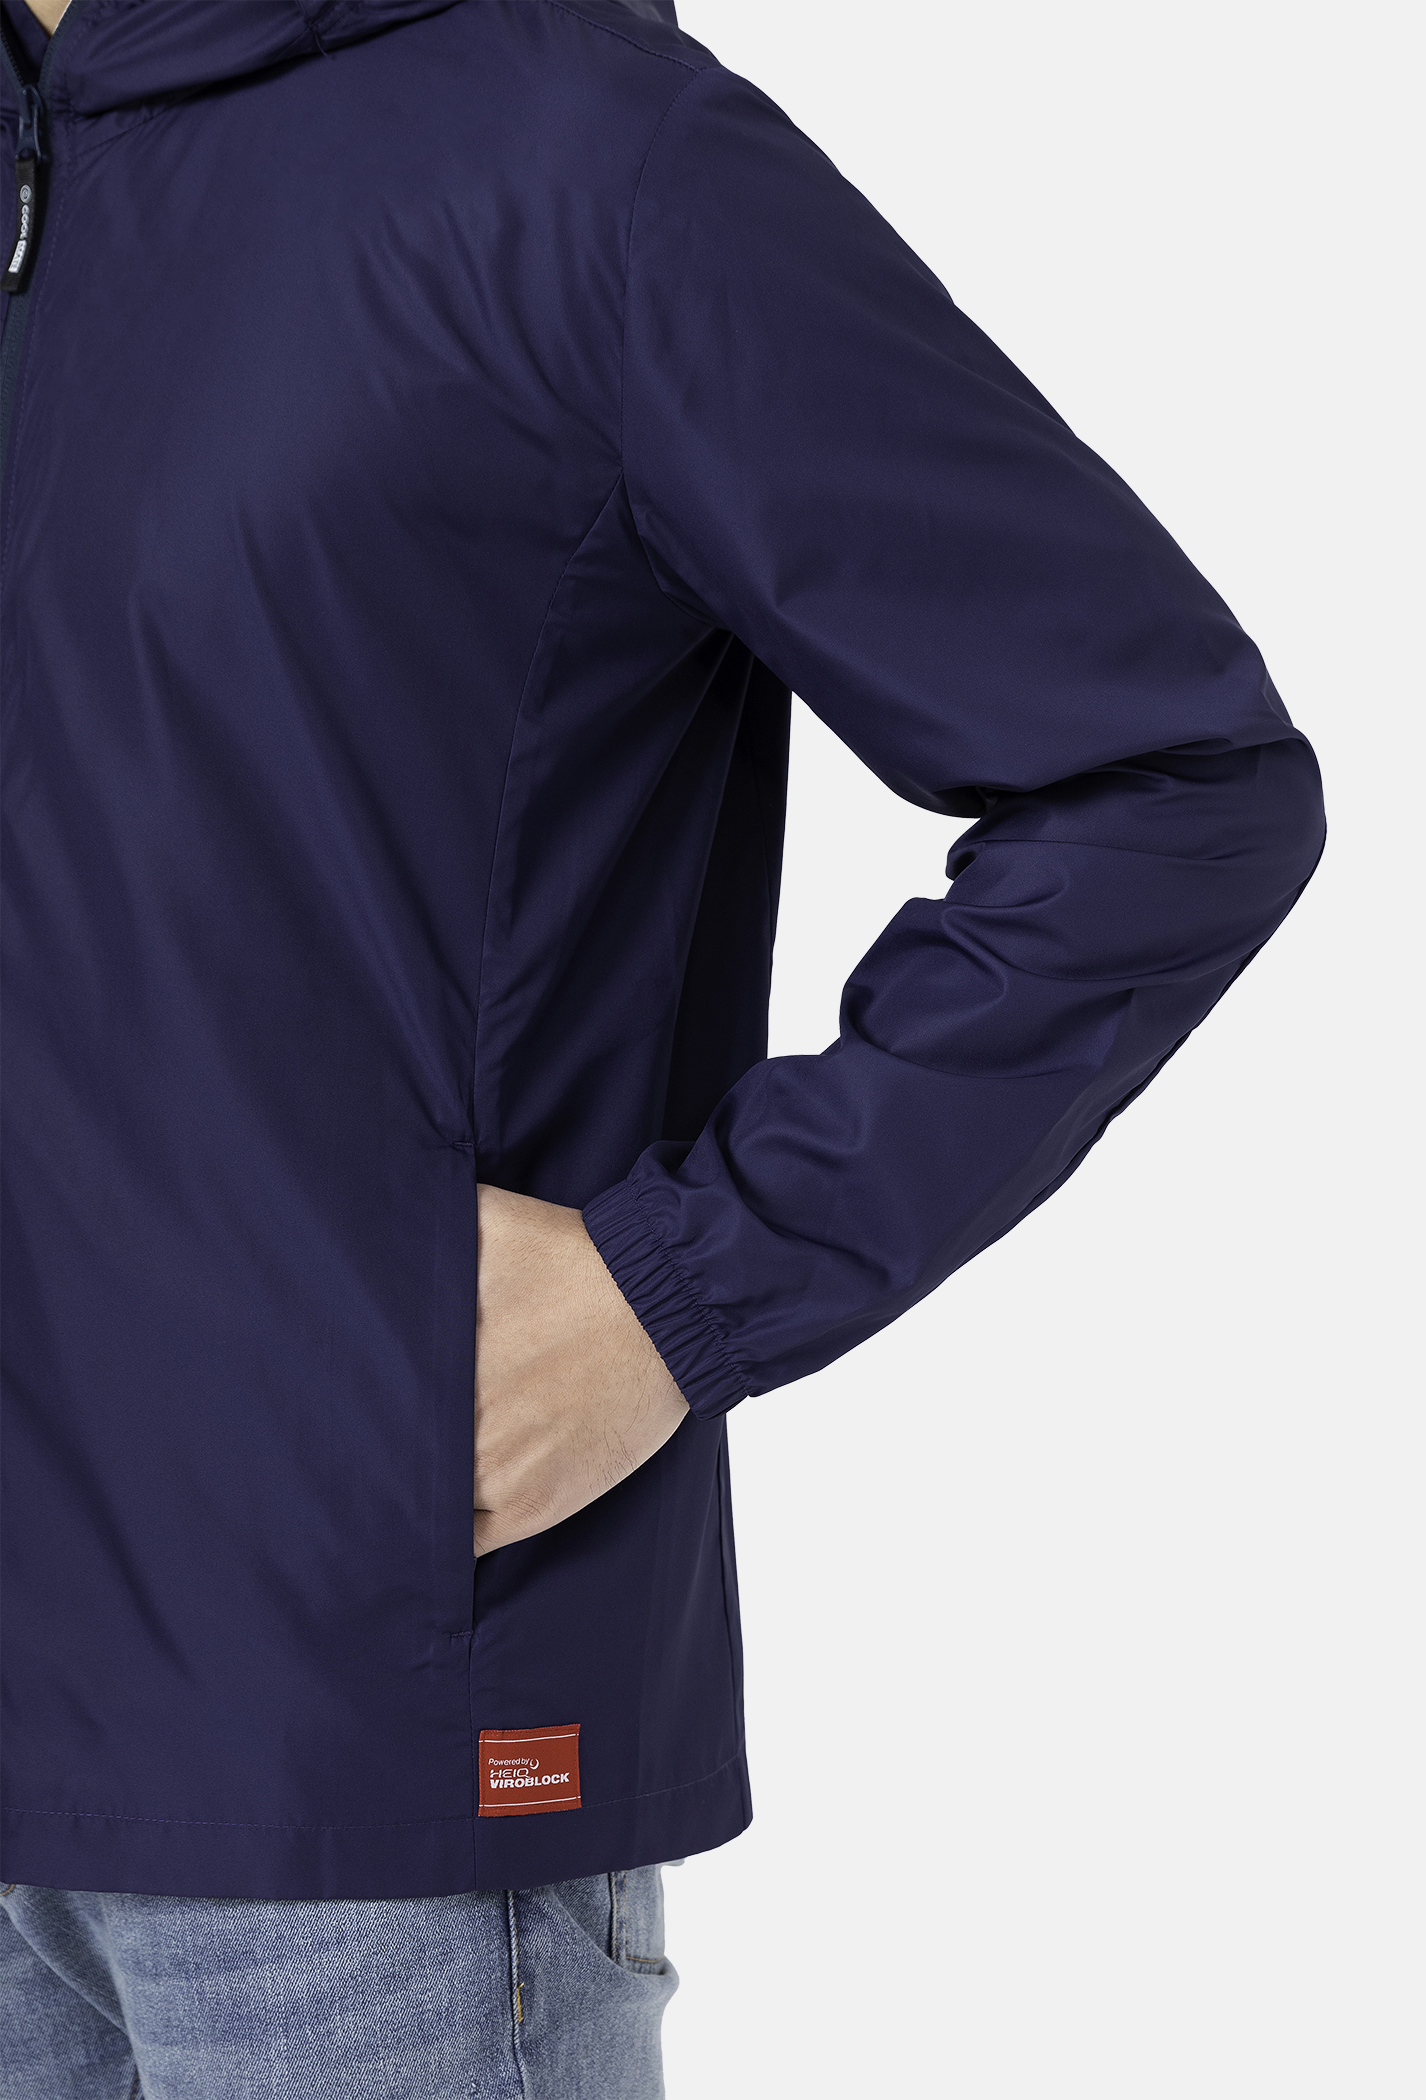 Áo khoác gió thể thao HeiQ ViroBlock, chống UV & trượt nước xanh-navy 3